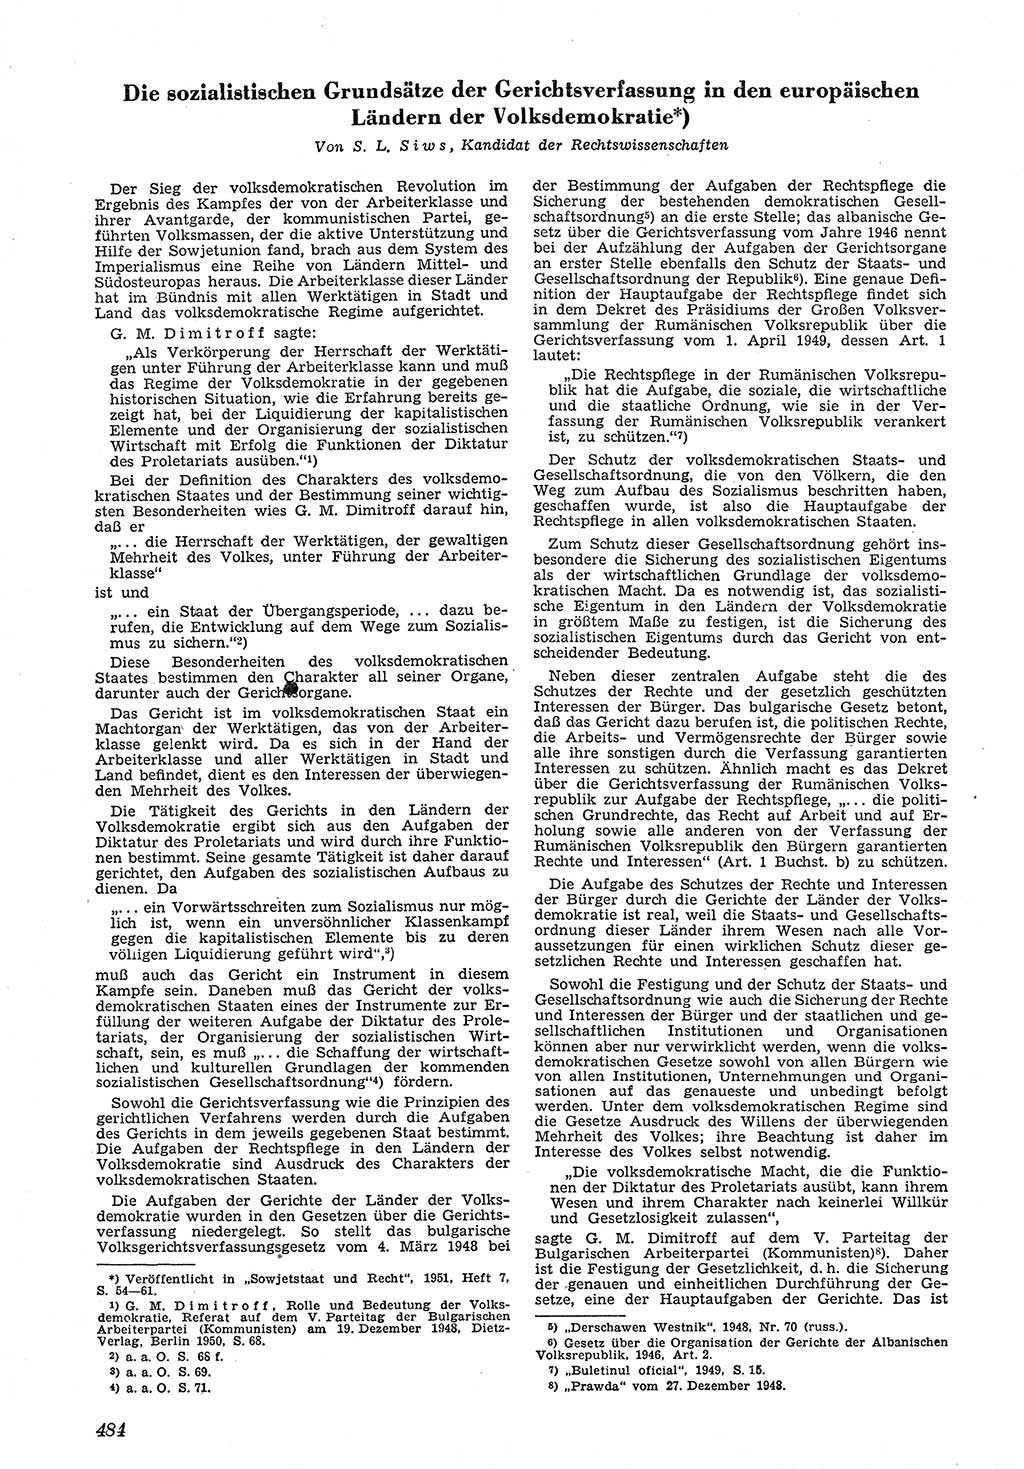 Neue Justiz (NJ), Zeitschrift für Recht und Rechtswissenschaft [Deutsche Demokratische Republik (DDR)], 5. Jahrgang 1951, Seite 484 (NJ DDR 1951, S. 484)